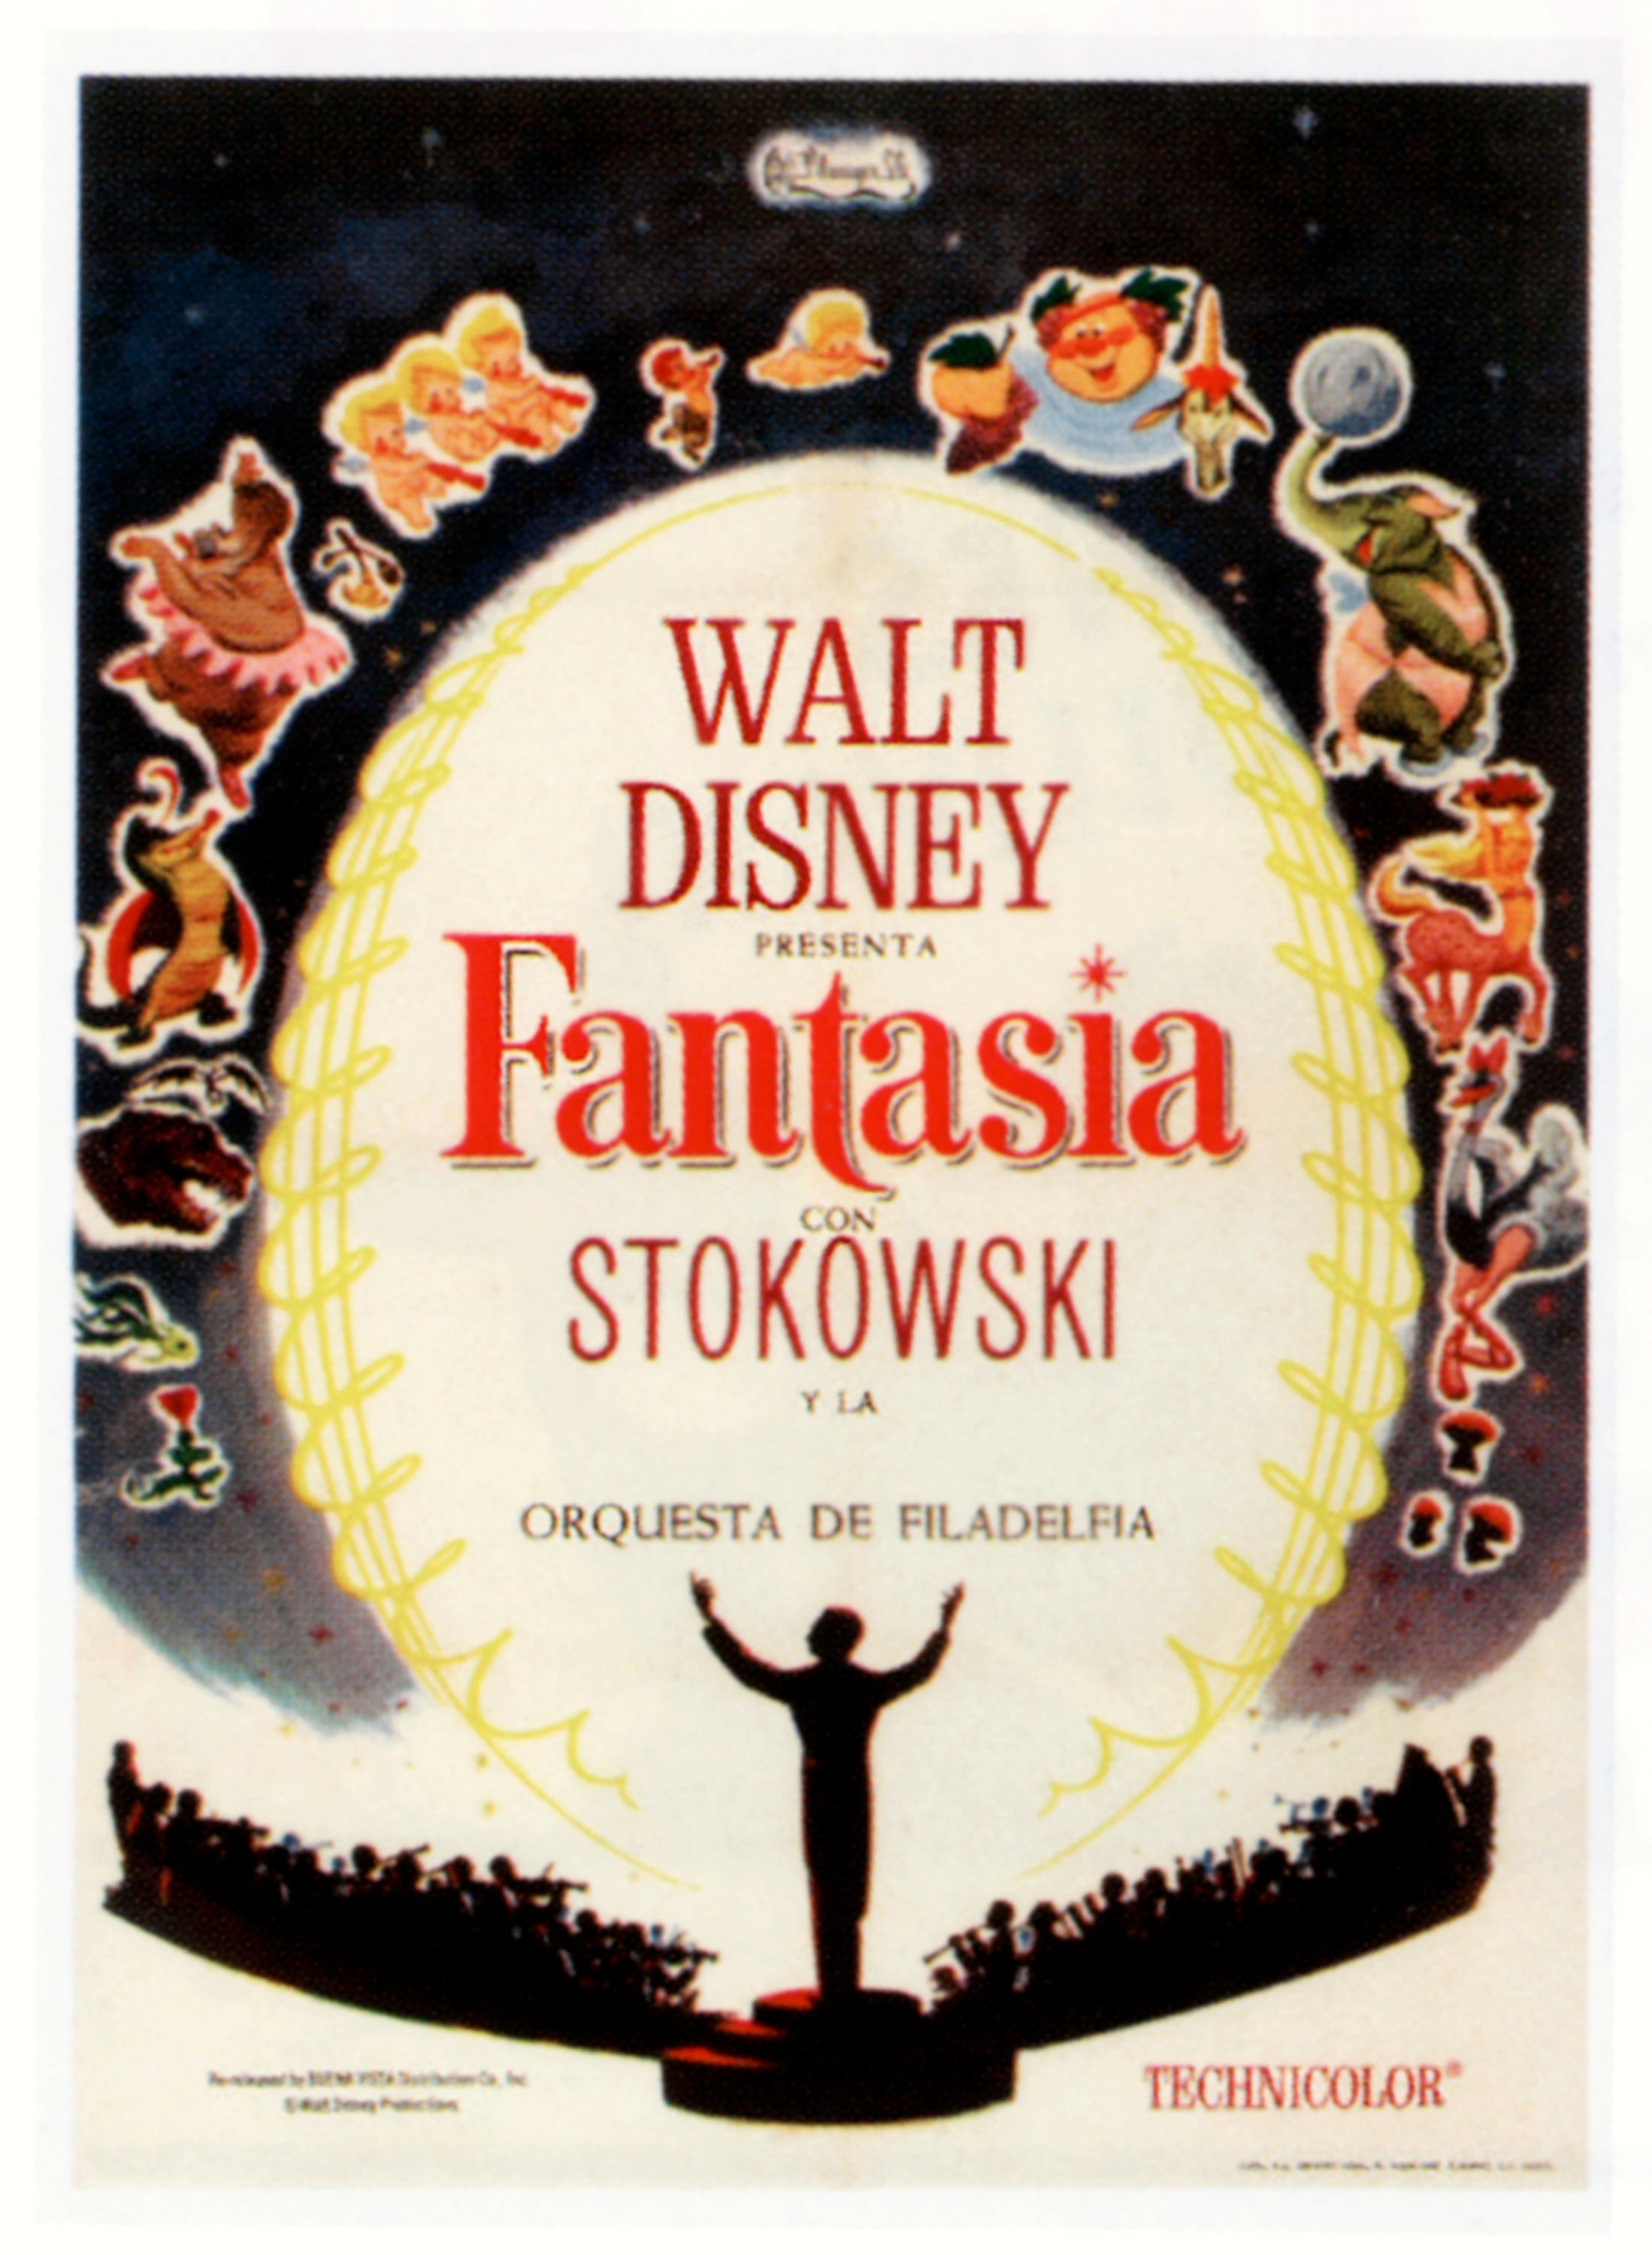 La locandina dell’edizione spagnola di “Fantasia” (1940)